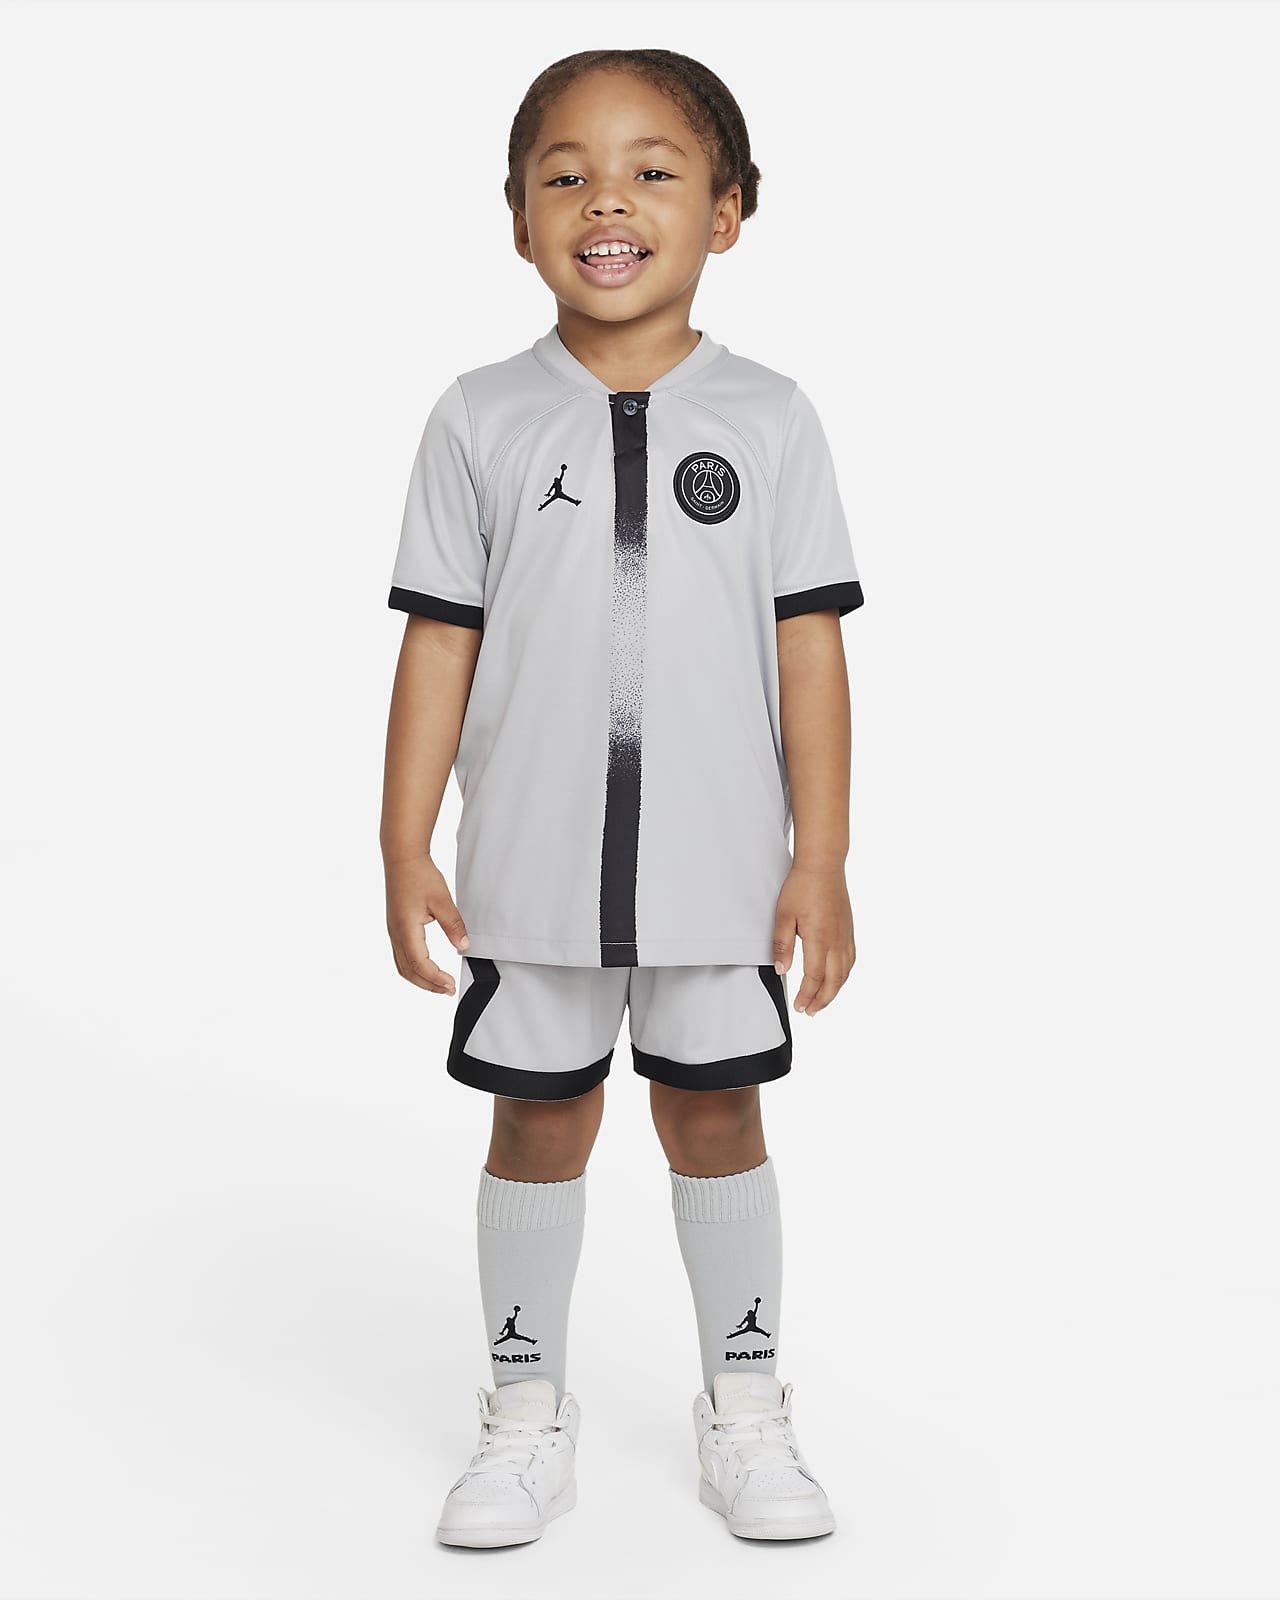 Trein Mona Lisa vreemd Paris Saint-Germain 2022/23 Away Younger Kids' Nike Football Kit. Nike GB